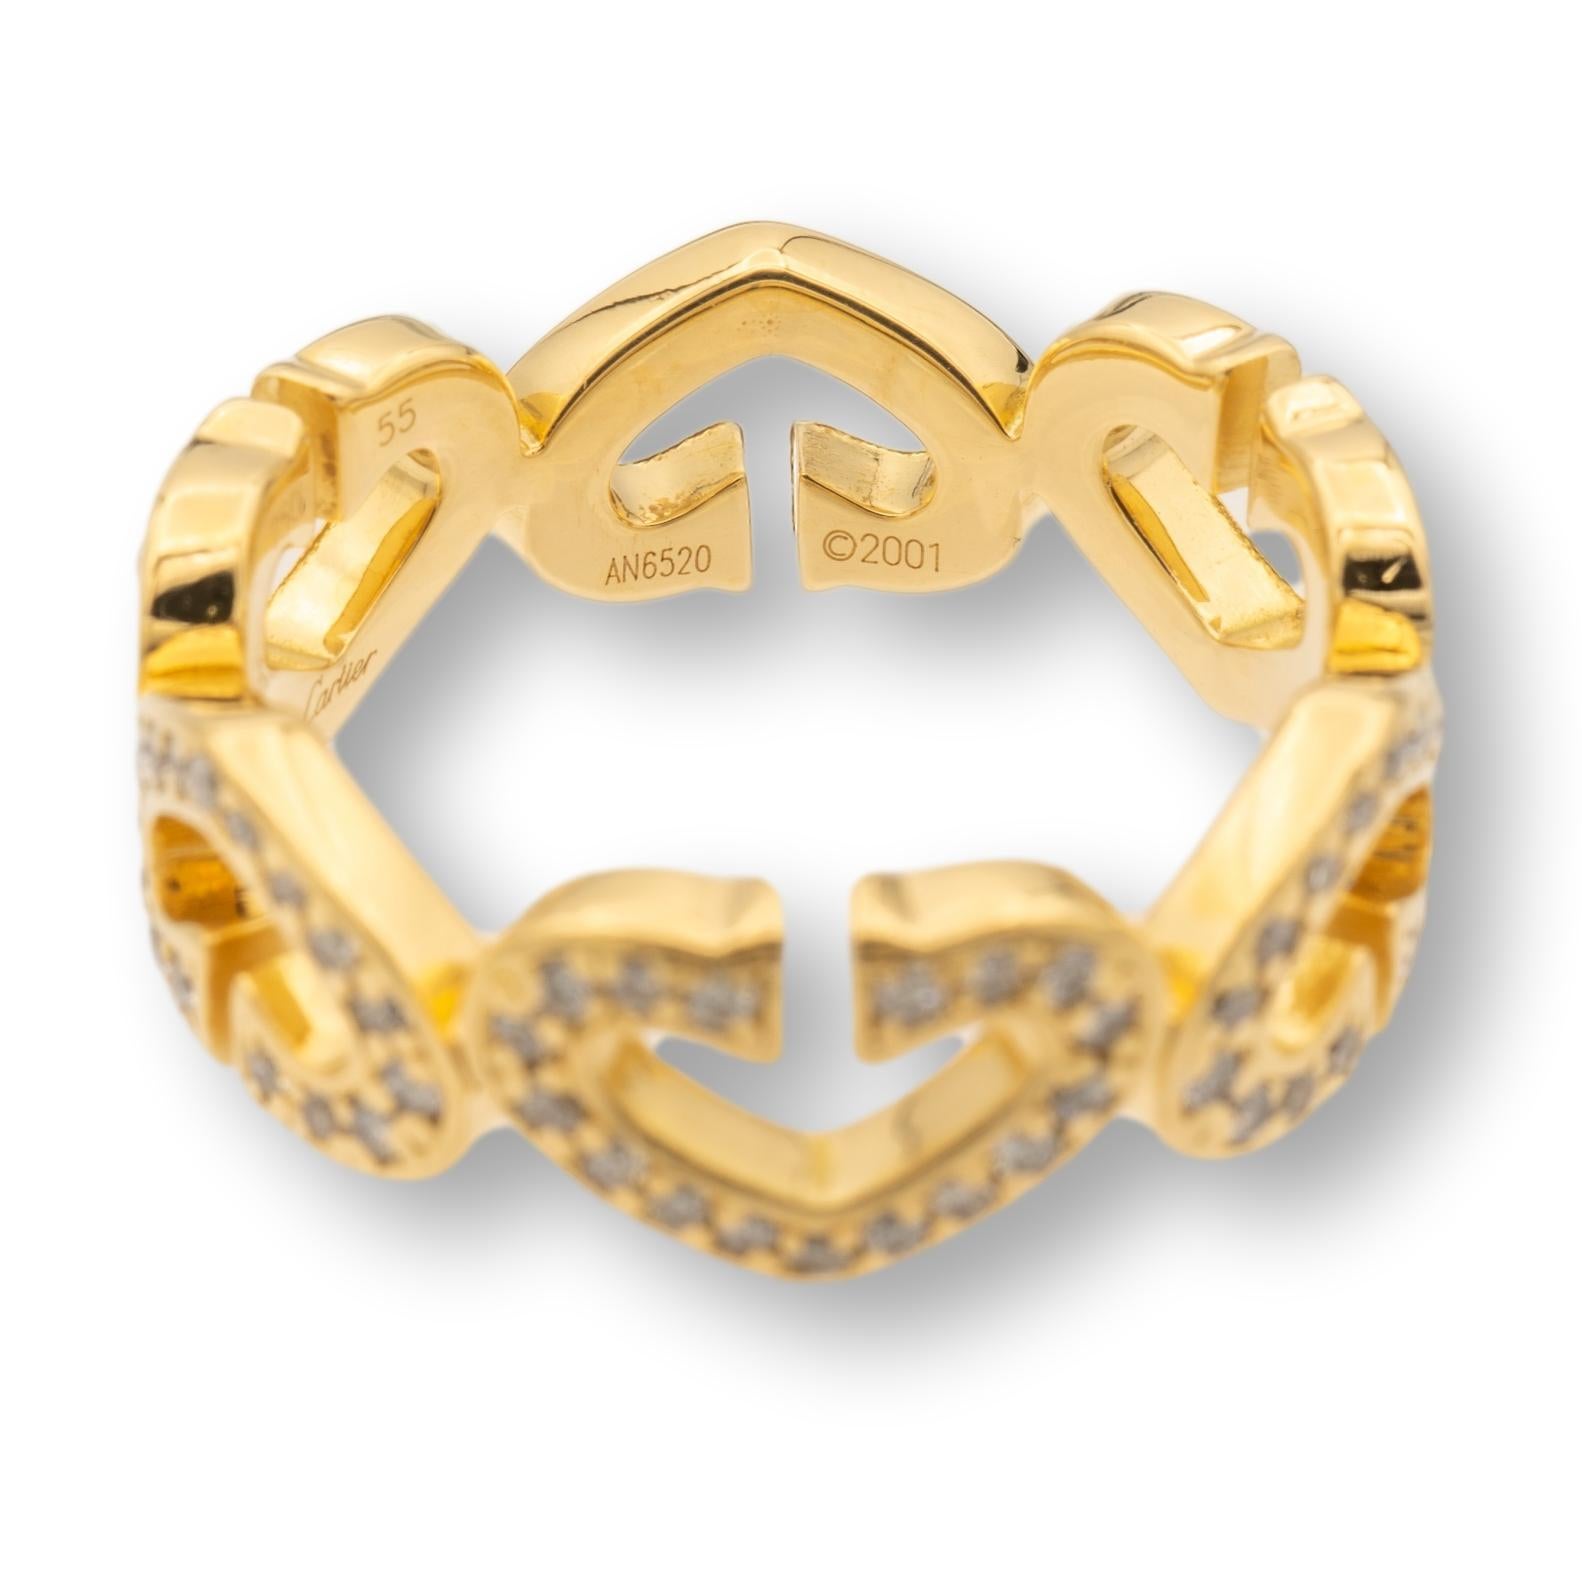 Bague Cartier de la Collection A.C.C. finement travaillée en or jaune 18 carats avec des diamants pavés sertis en six motifs de cœur sur tout le pourtour. La bague est entièrement poinçonnée avec les numéros de série de Cartier et la teneur en